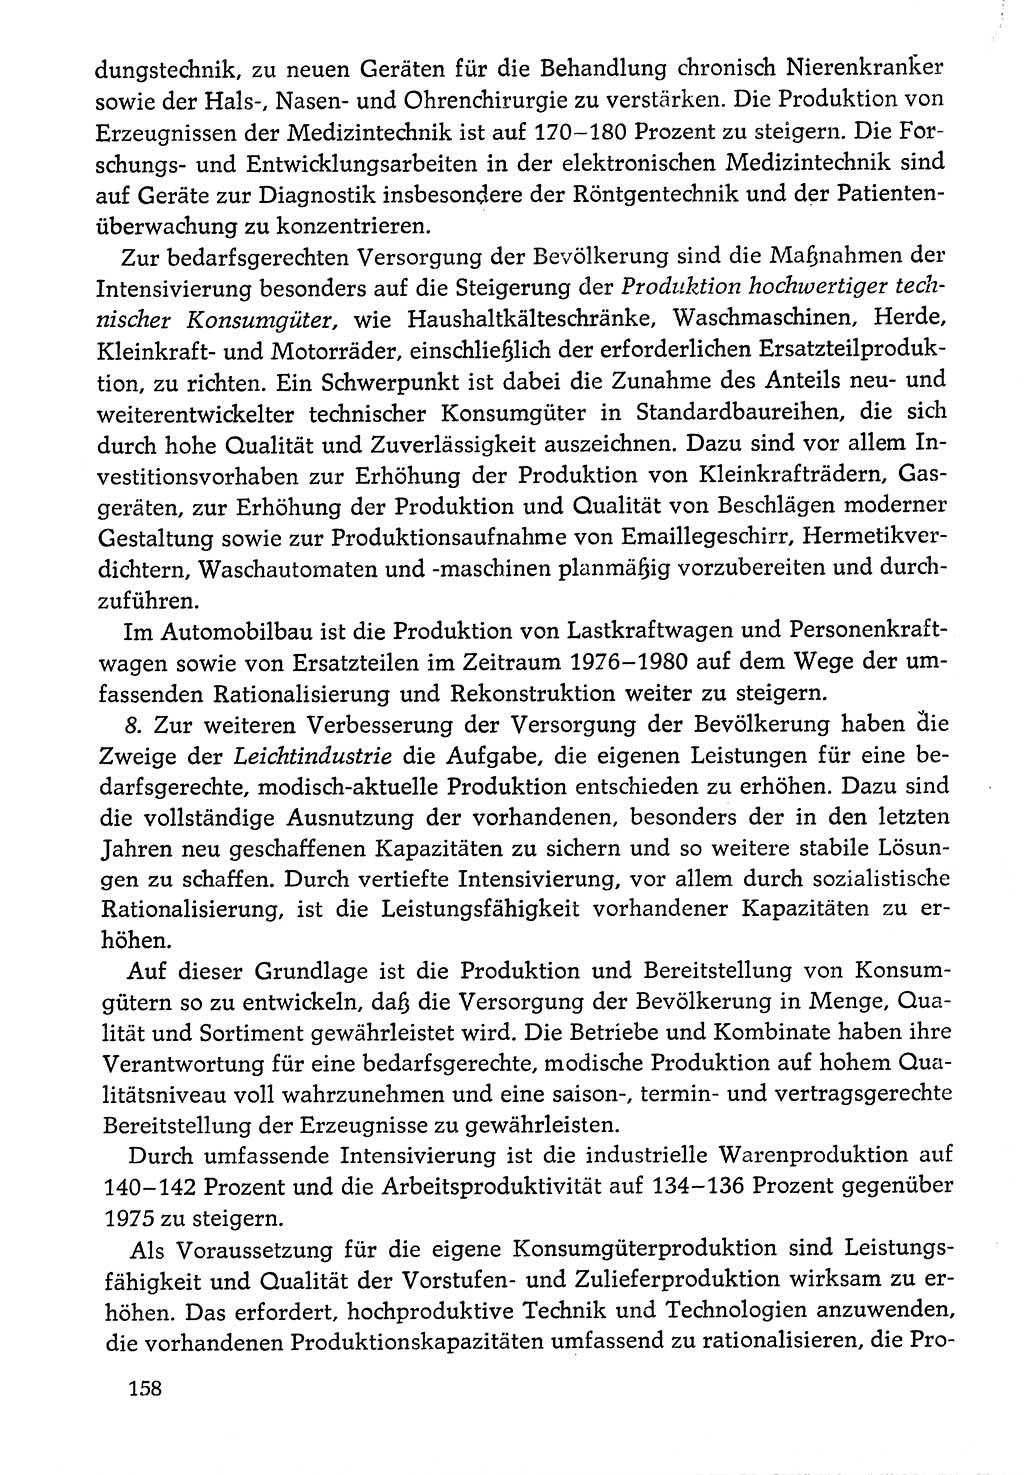 Dokumente der Sozialistischen Einheitspartei Deutschlands (SED) [Deutsche Demokratische Republik (DDR)] 1976-1977, Seite 158 (Dok. SED DDR 1976-1977, S. 158)